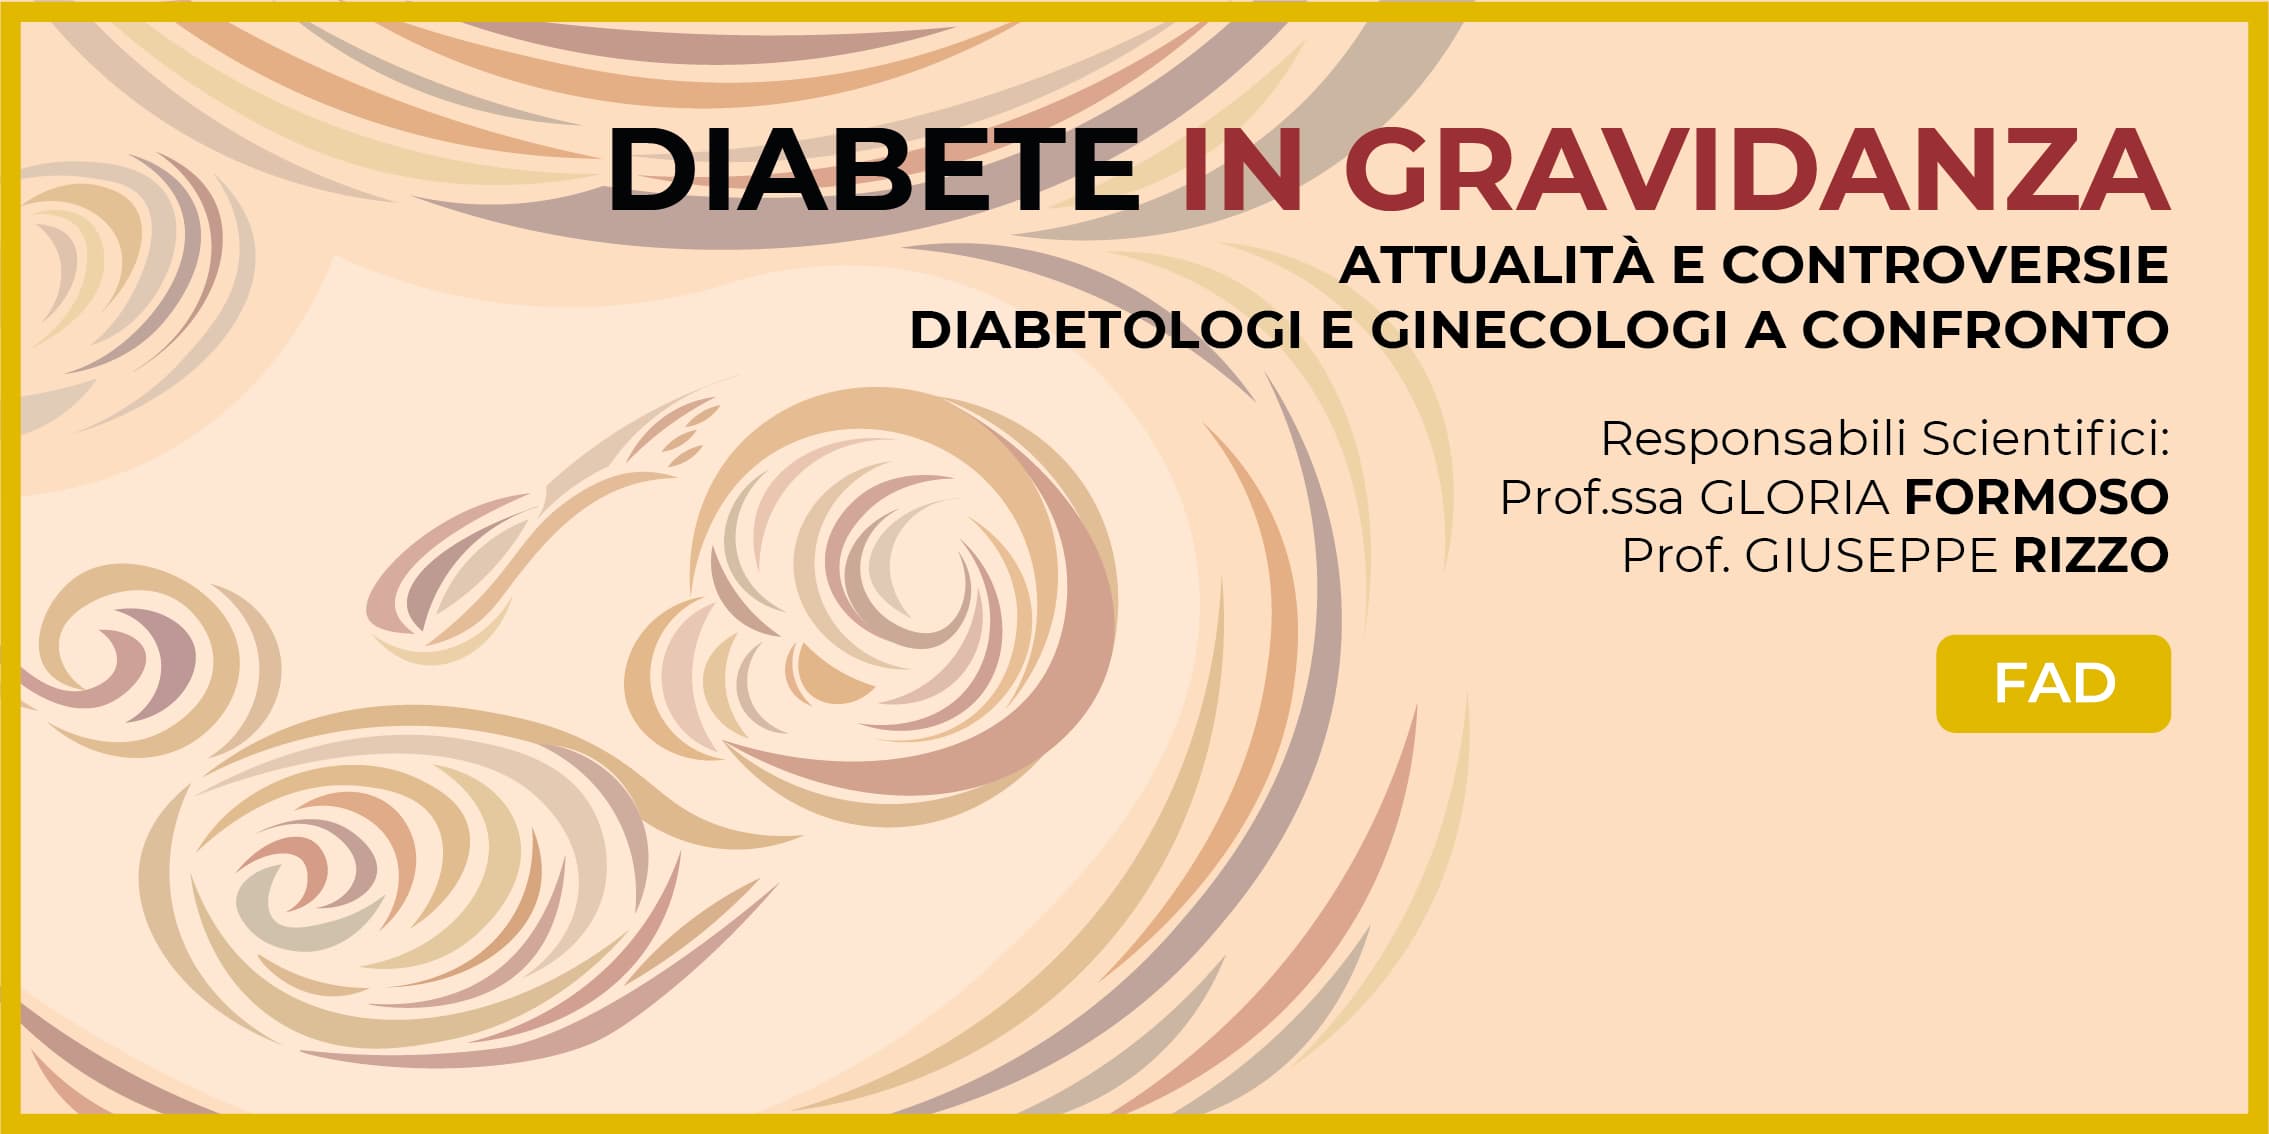 Diabete in gravidanza: attualità e controversie - Diabetologi e Ginecologi a confronto FAD